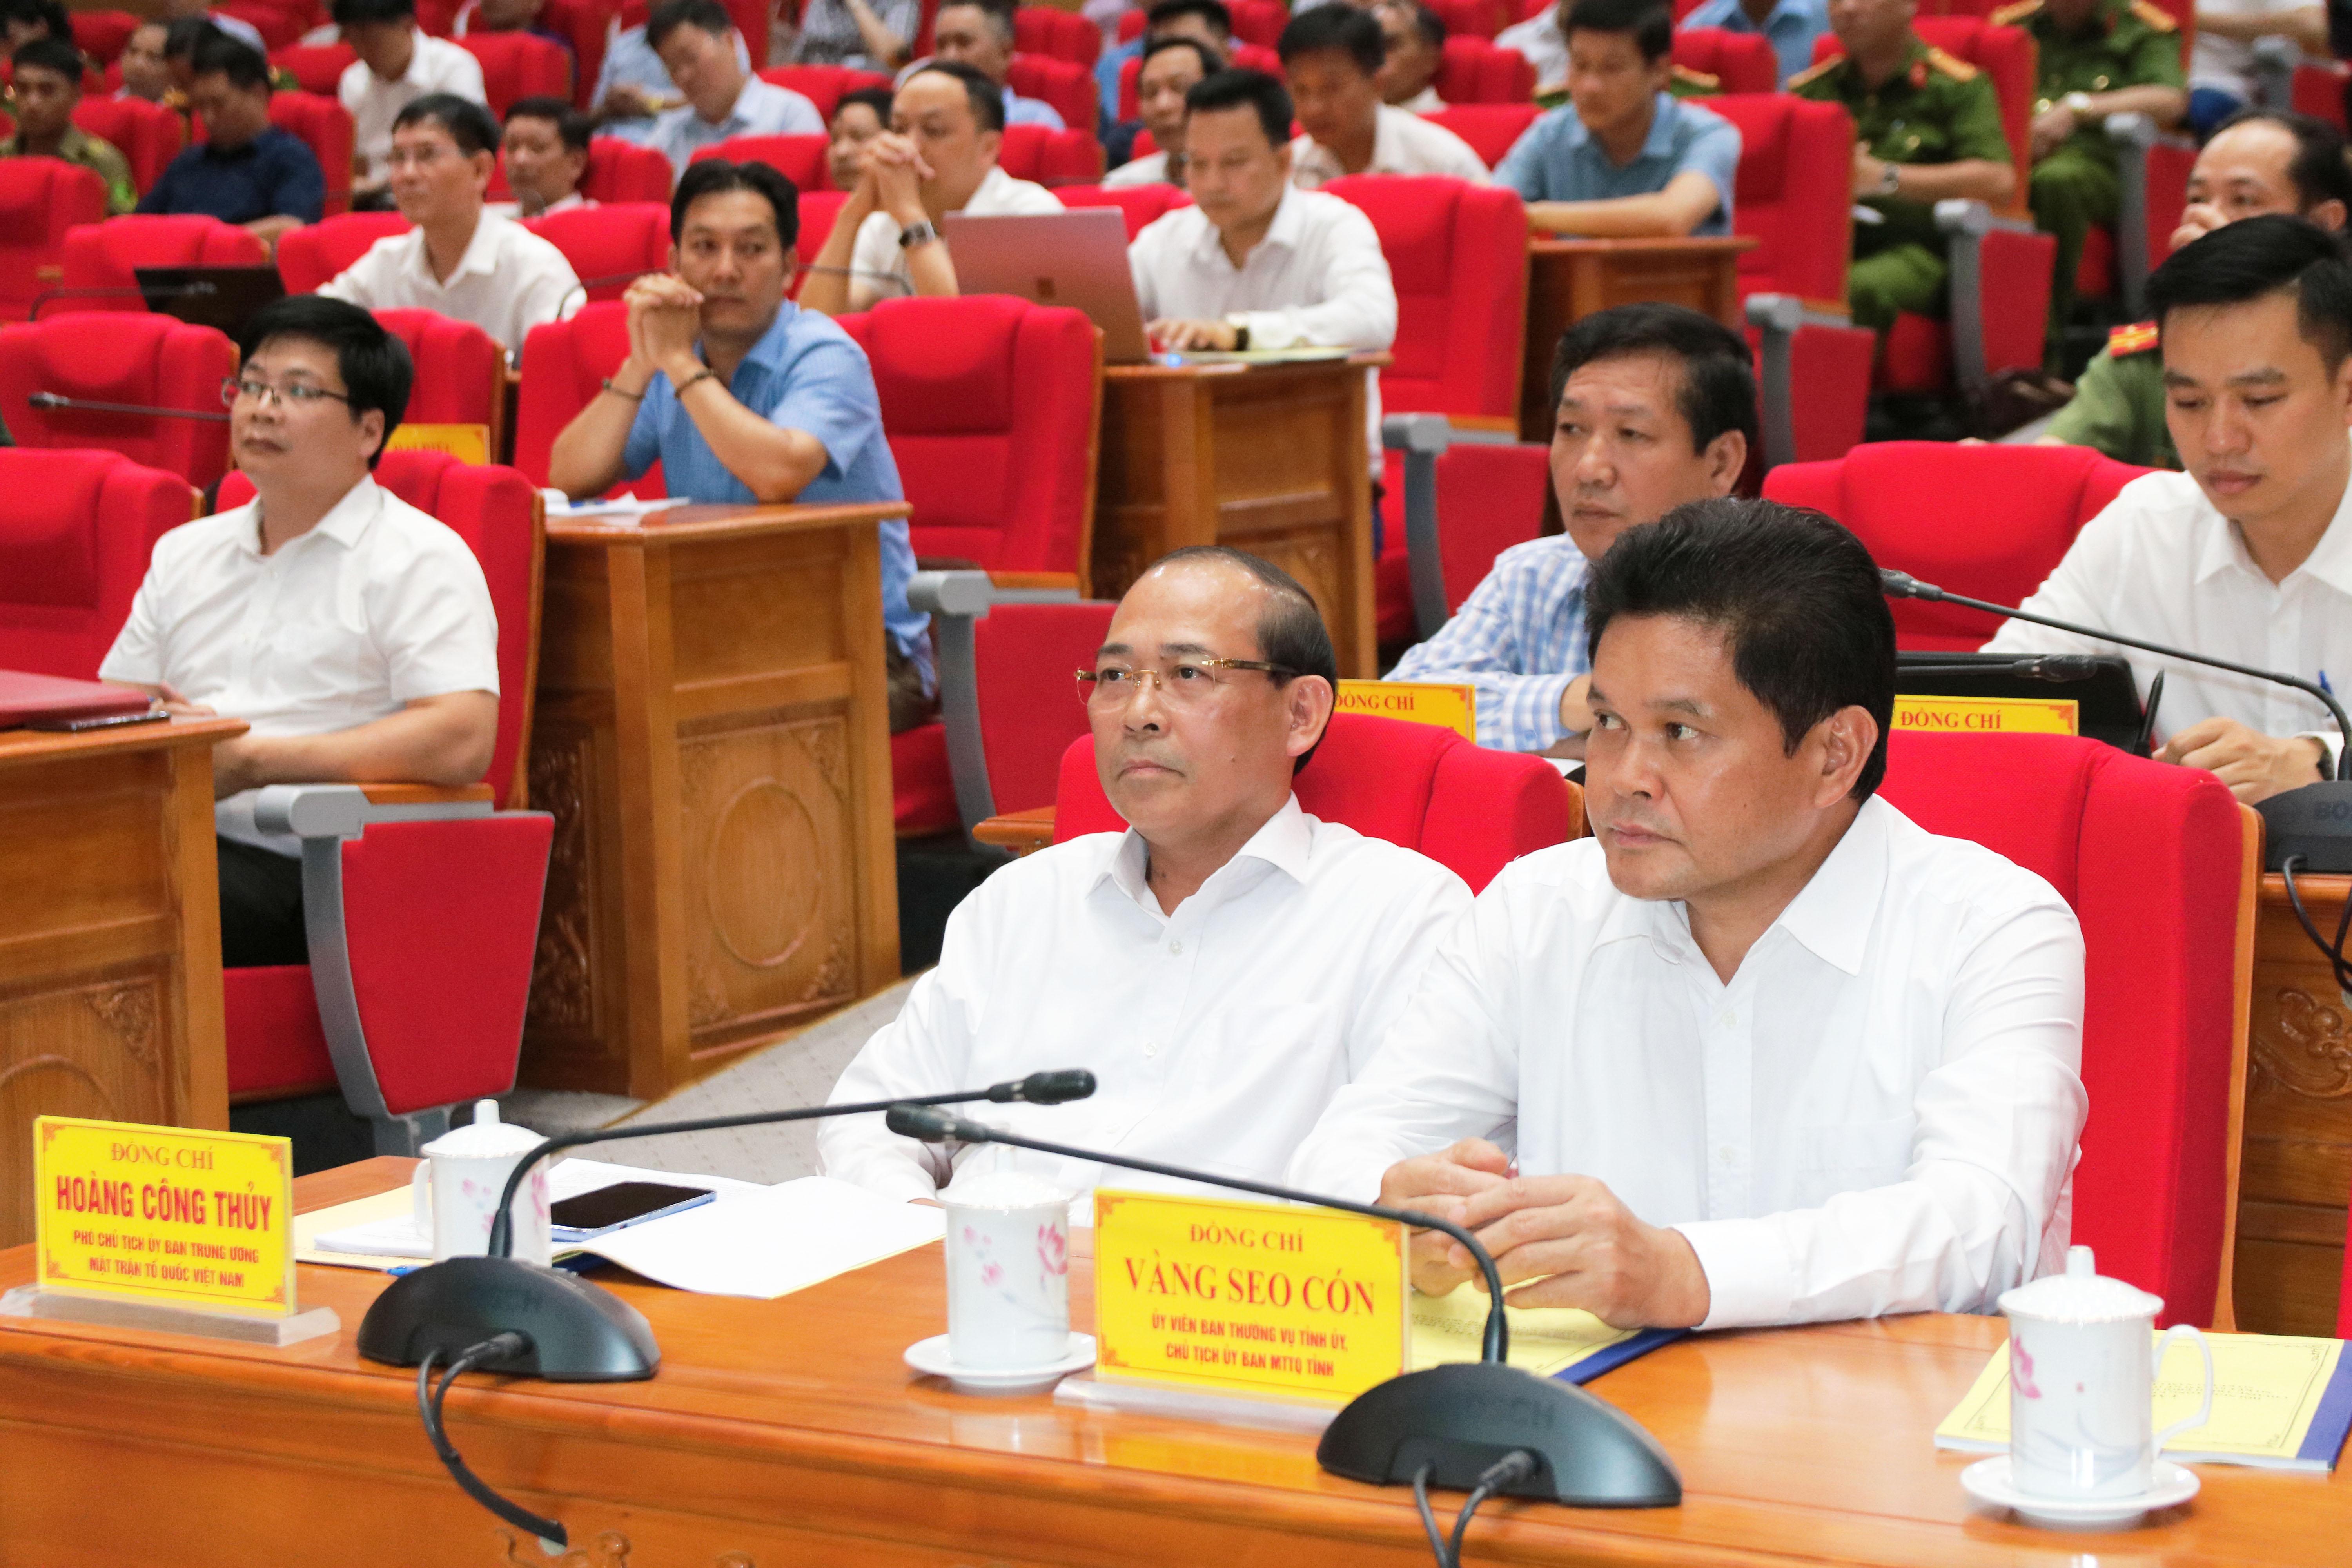 Phó Chủ tịch UBTƯ MTTQ Việt Nam Hoàng Công Thủy cùng các đại biểu tham dự Hội nghị.